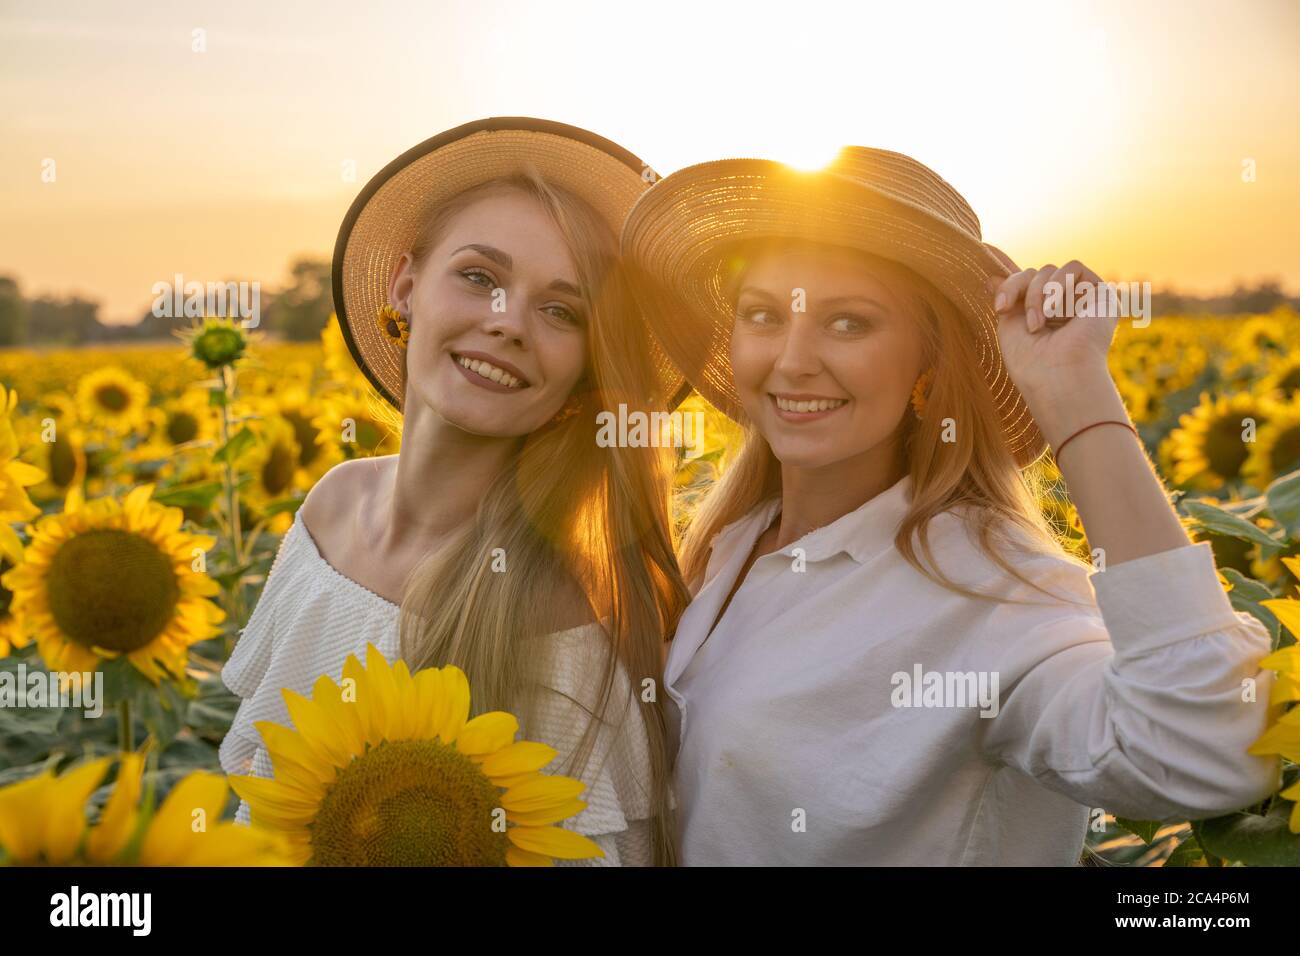 8. Sunflower Blonde - wide 7